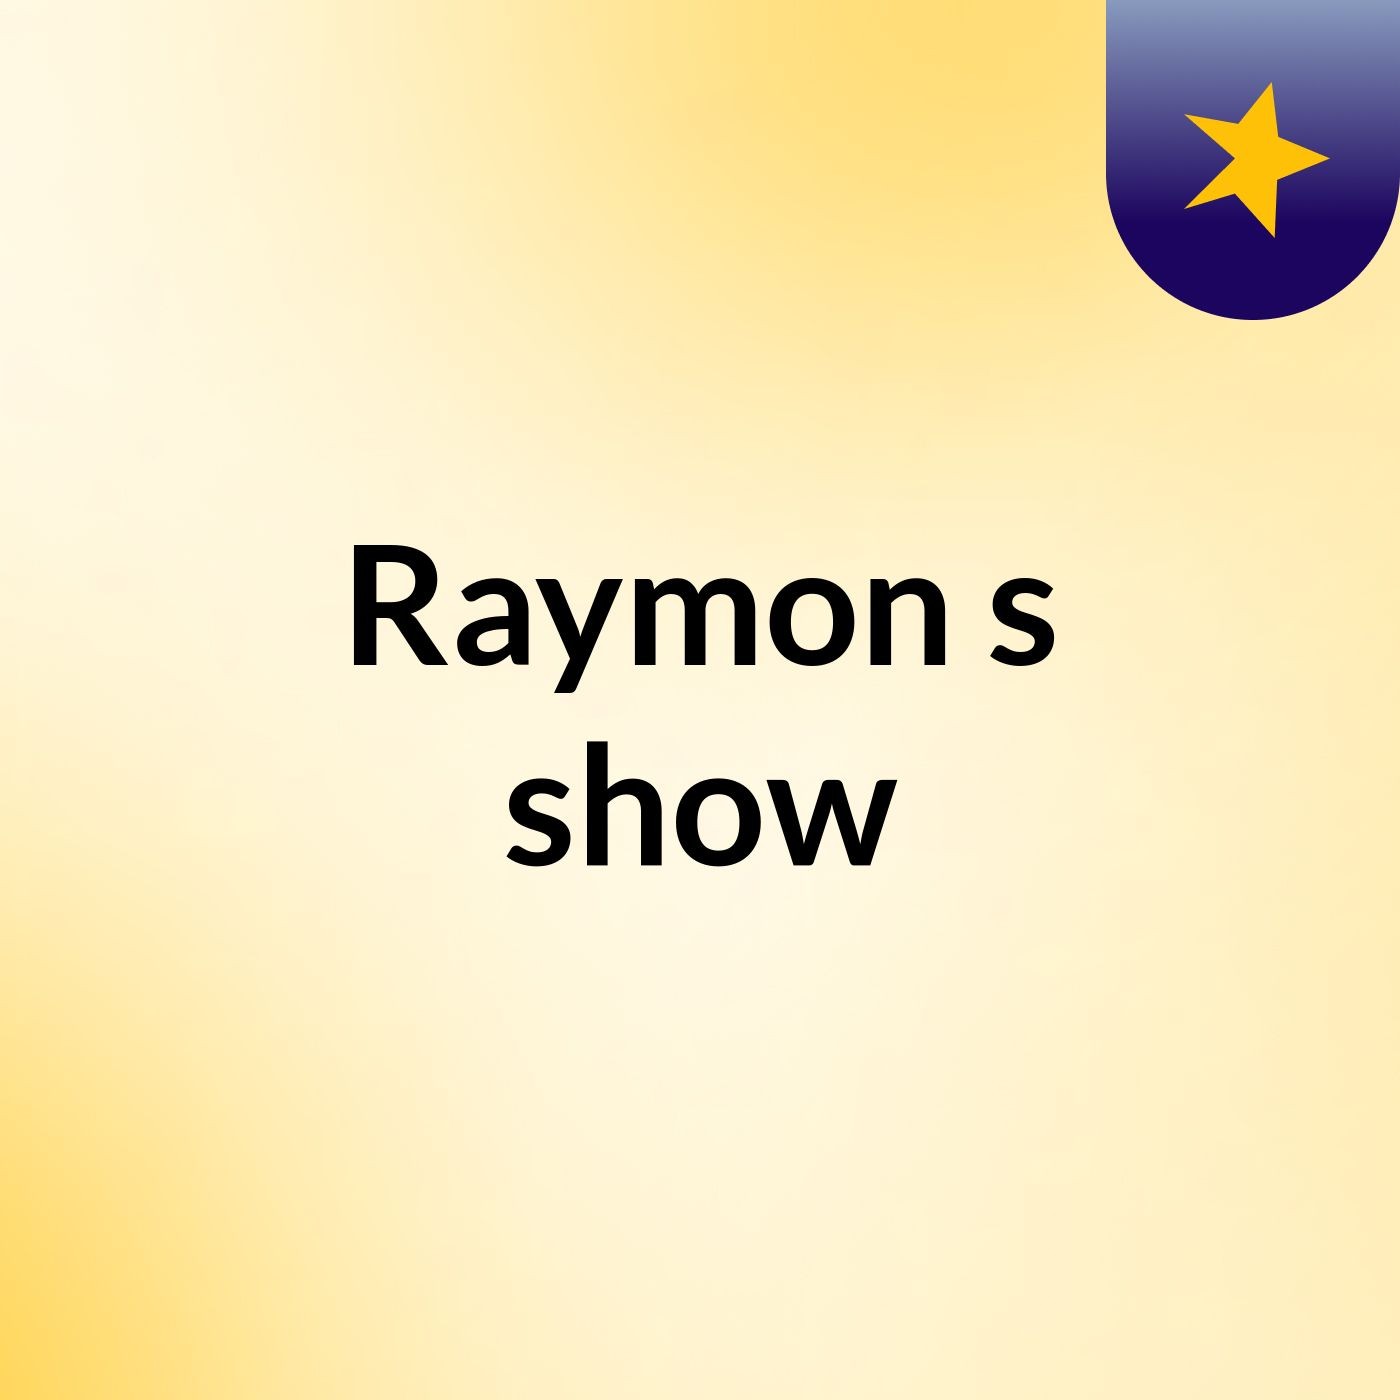 Raymon's show